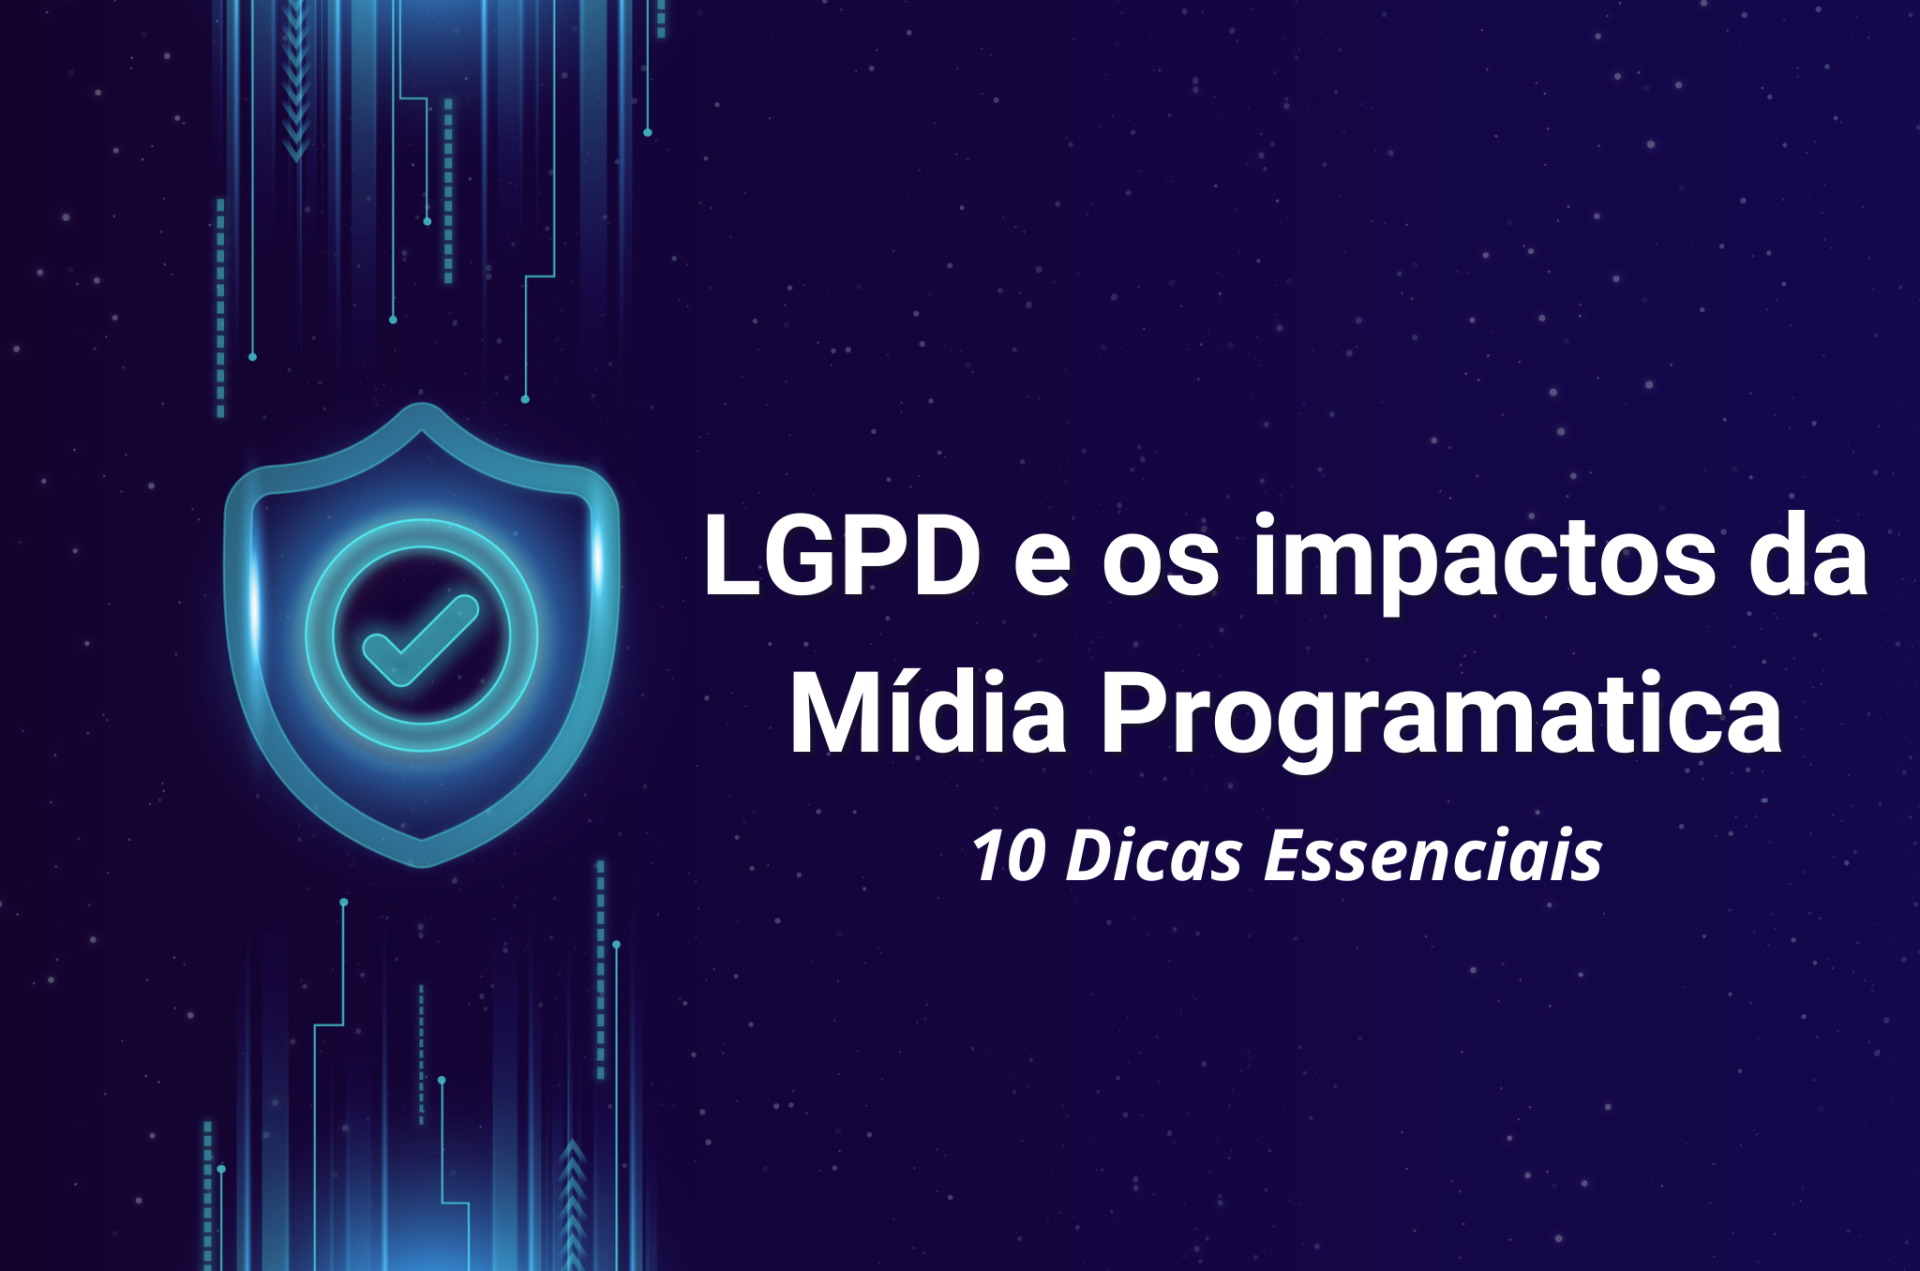 LGPD e os impactos da Mídia Programática: 10 dicas essenciais